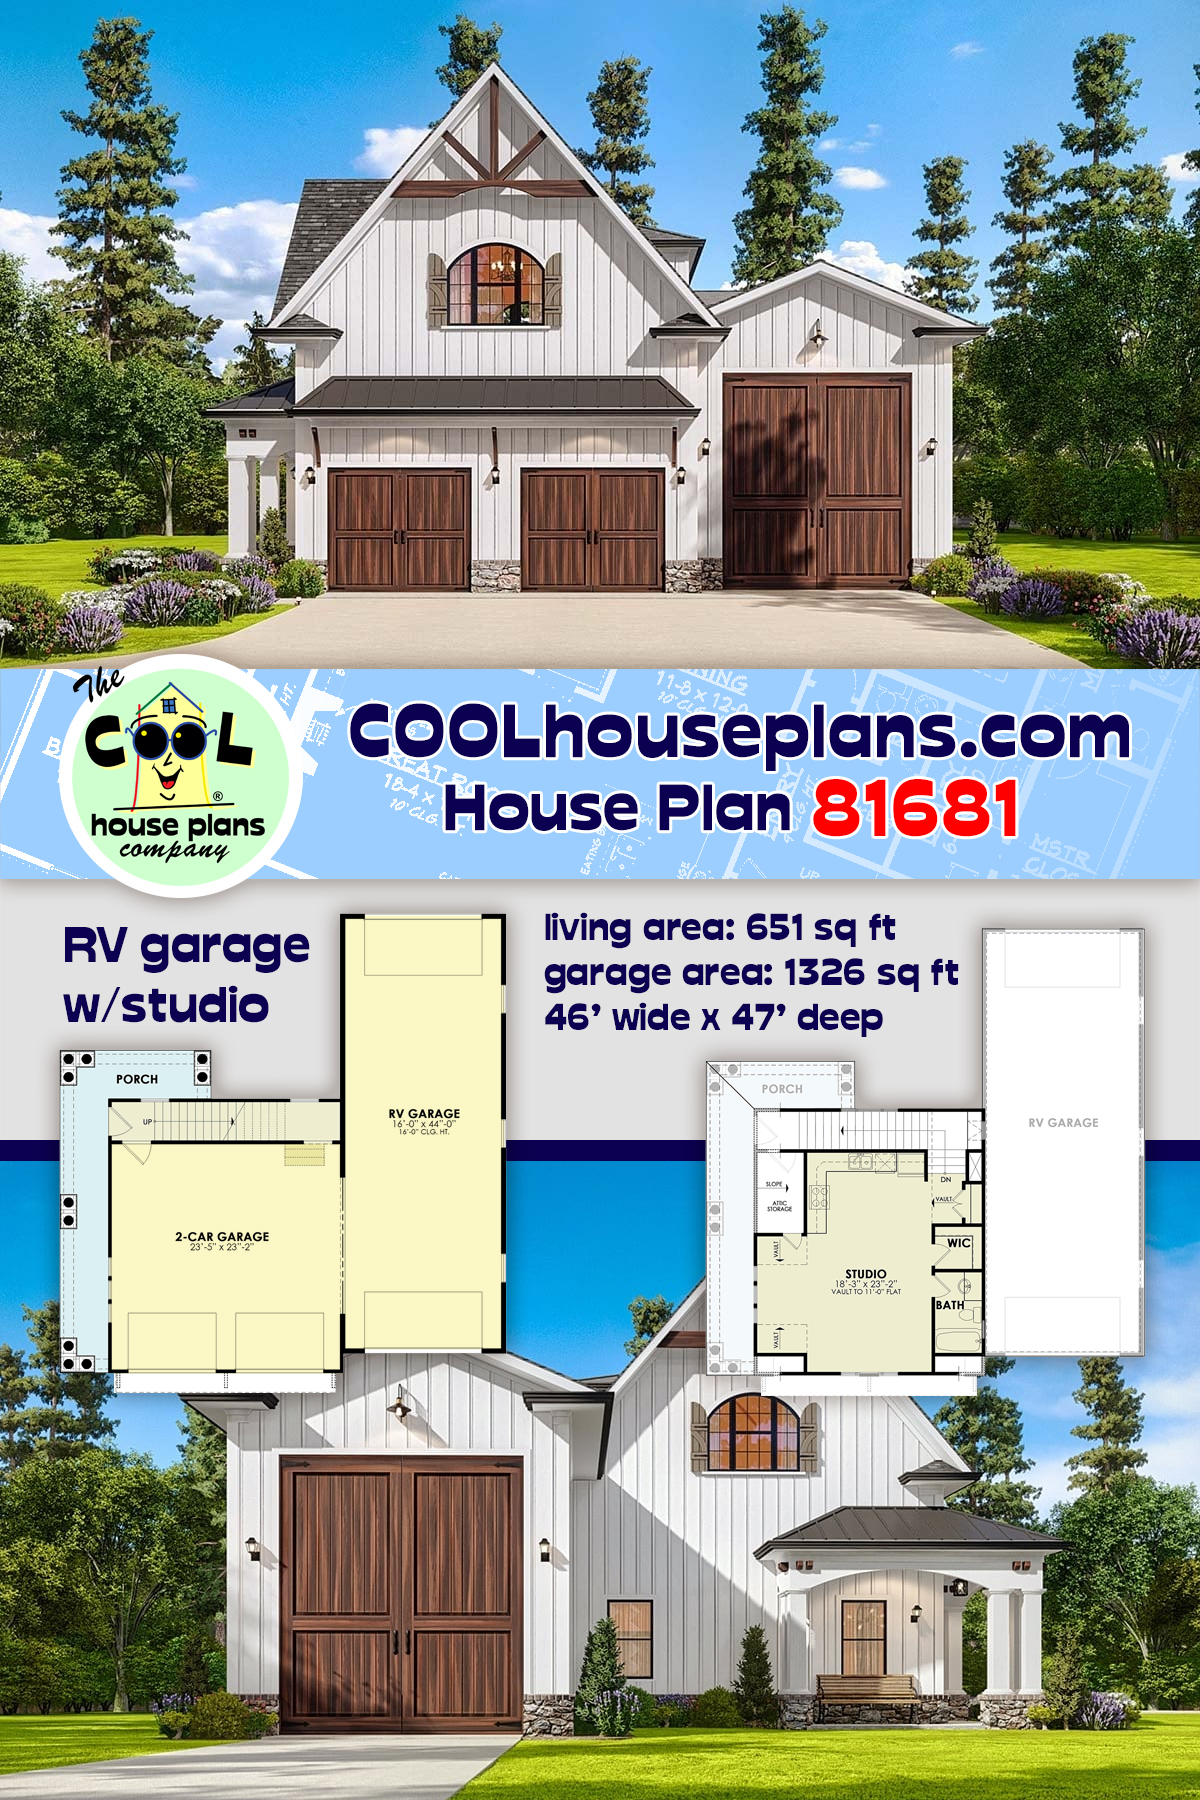 Cottage, Craftsman, European, French Country Garage-Living Plan 81681, 2 Car Garage